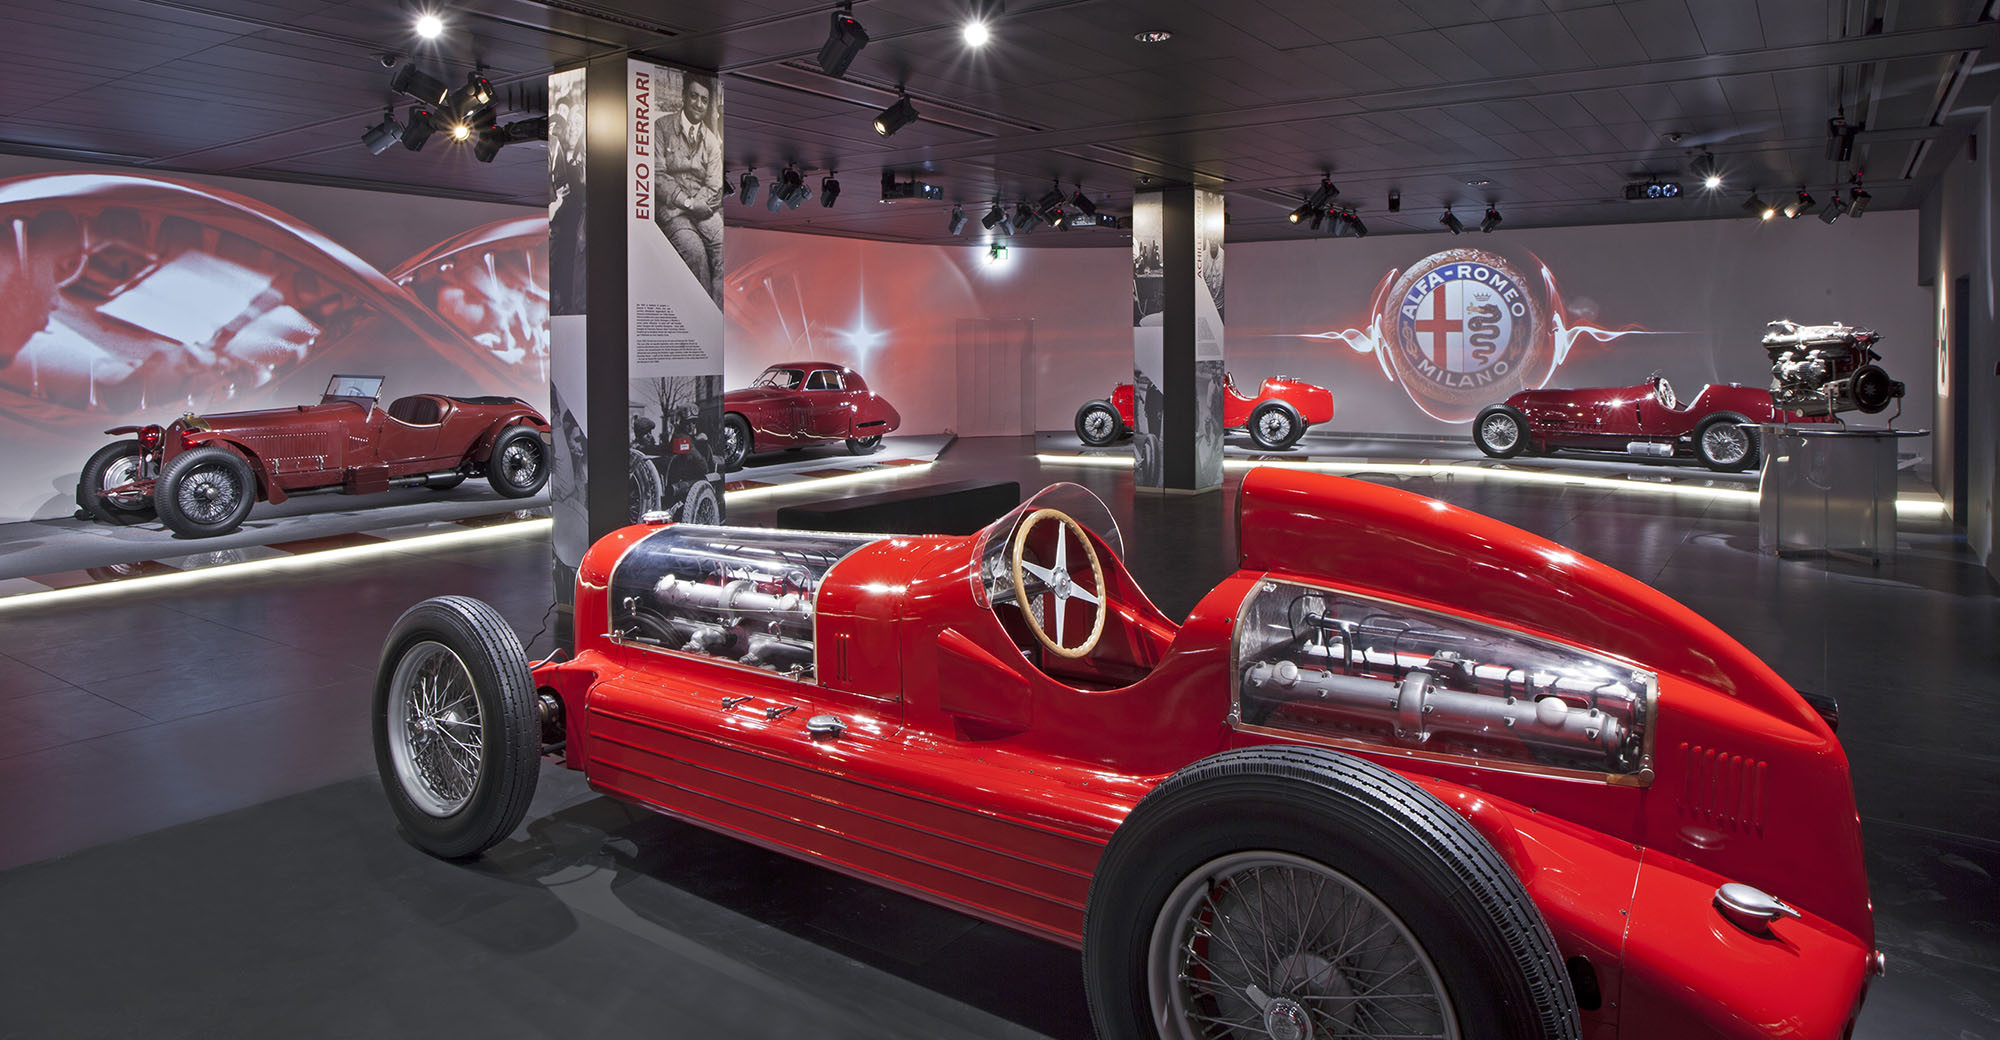 Έχετε ακούσει για τον κρυμμένο θησαυρό της Alfa Romeo;